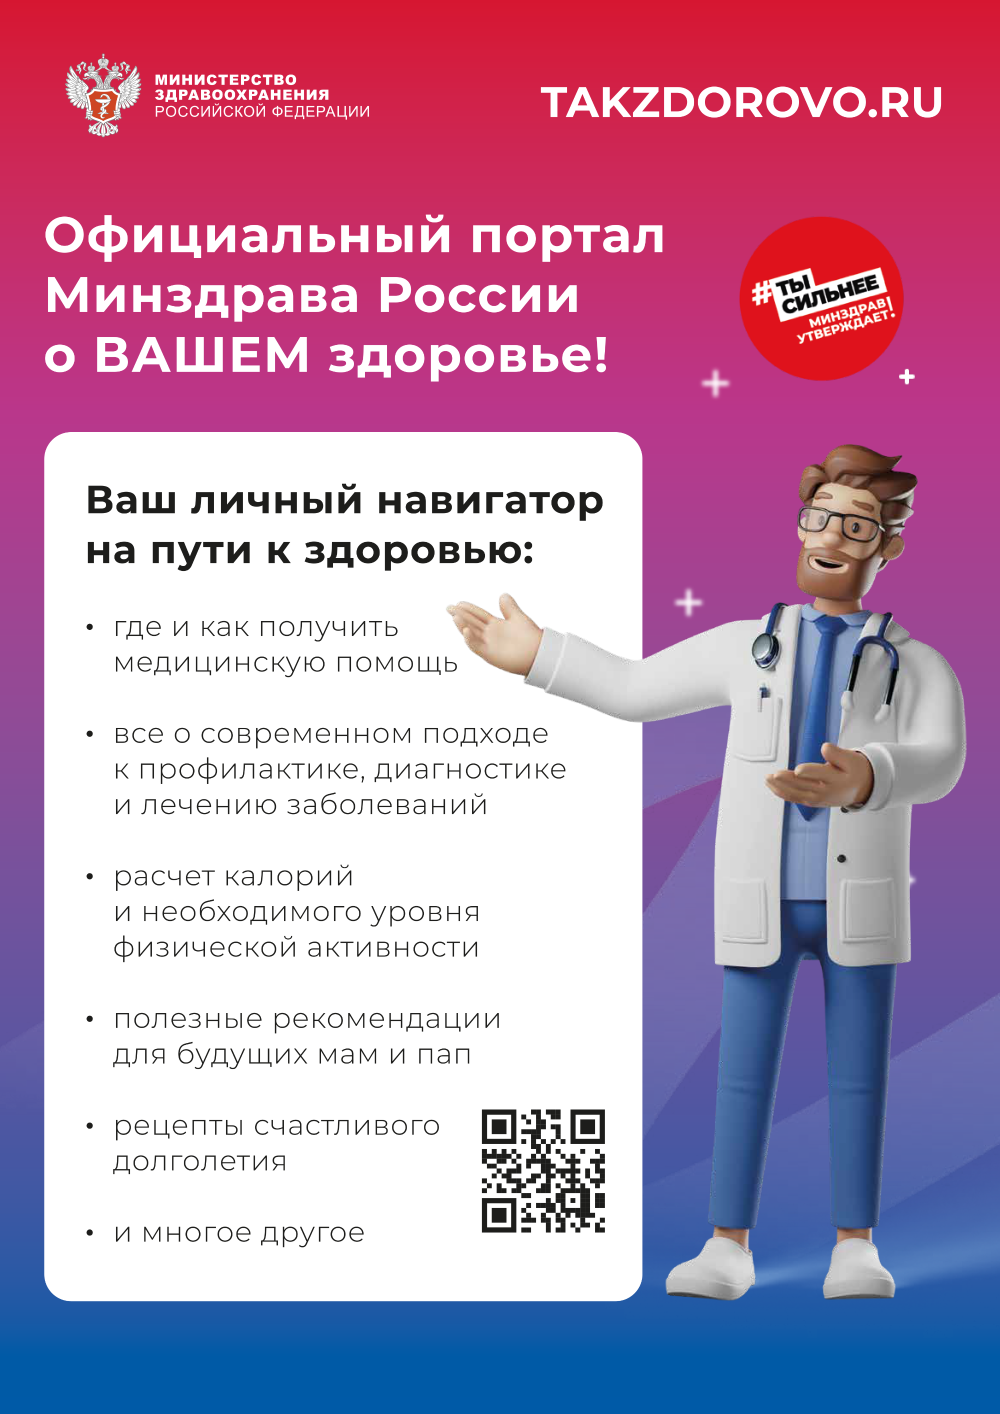 Портал о здоровье TAKZDOROVO.RU – присоединяйтесь!